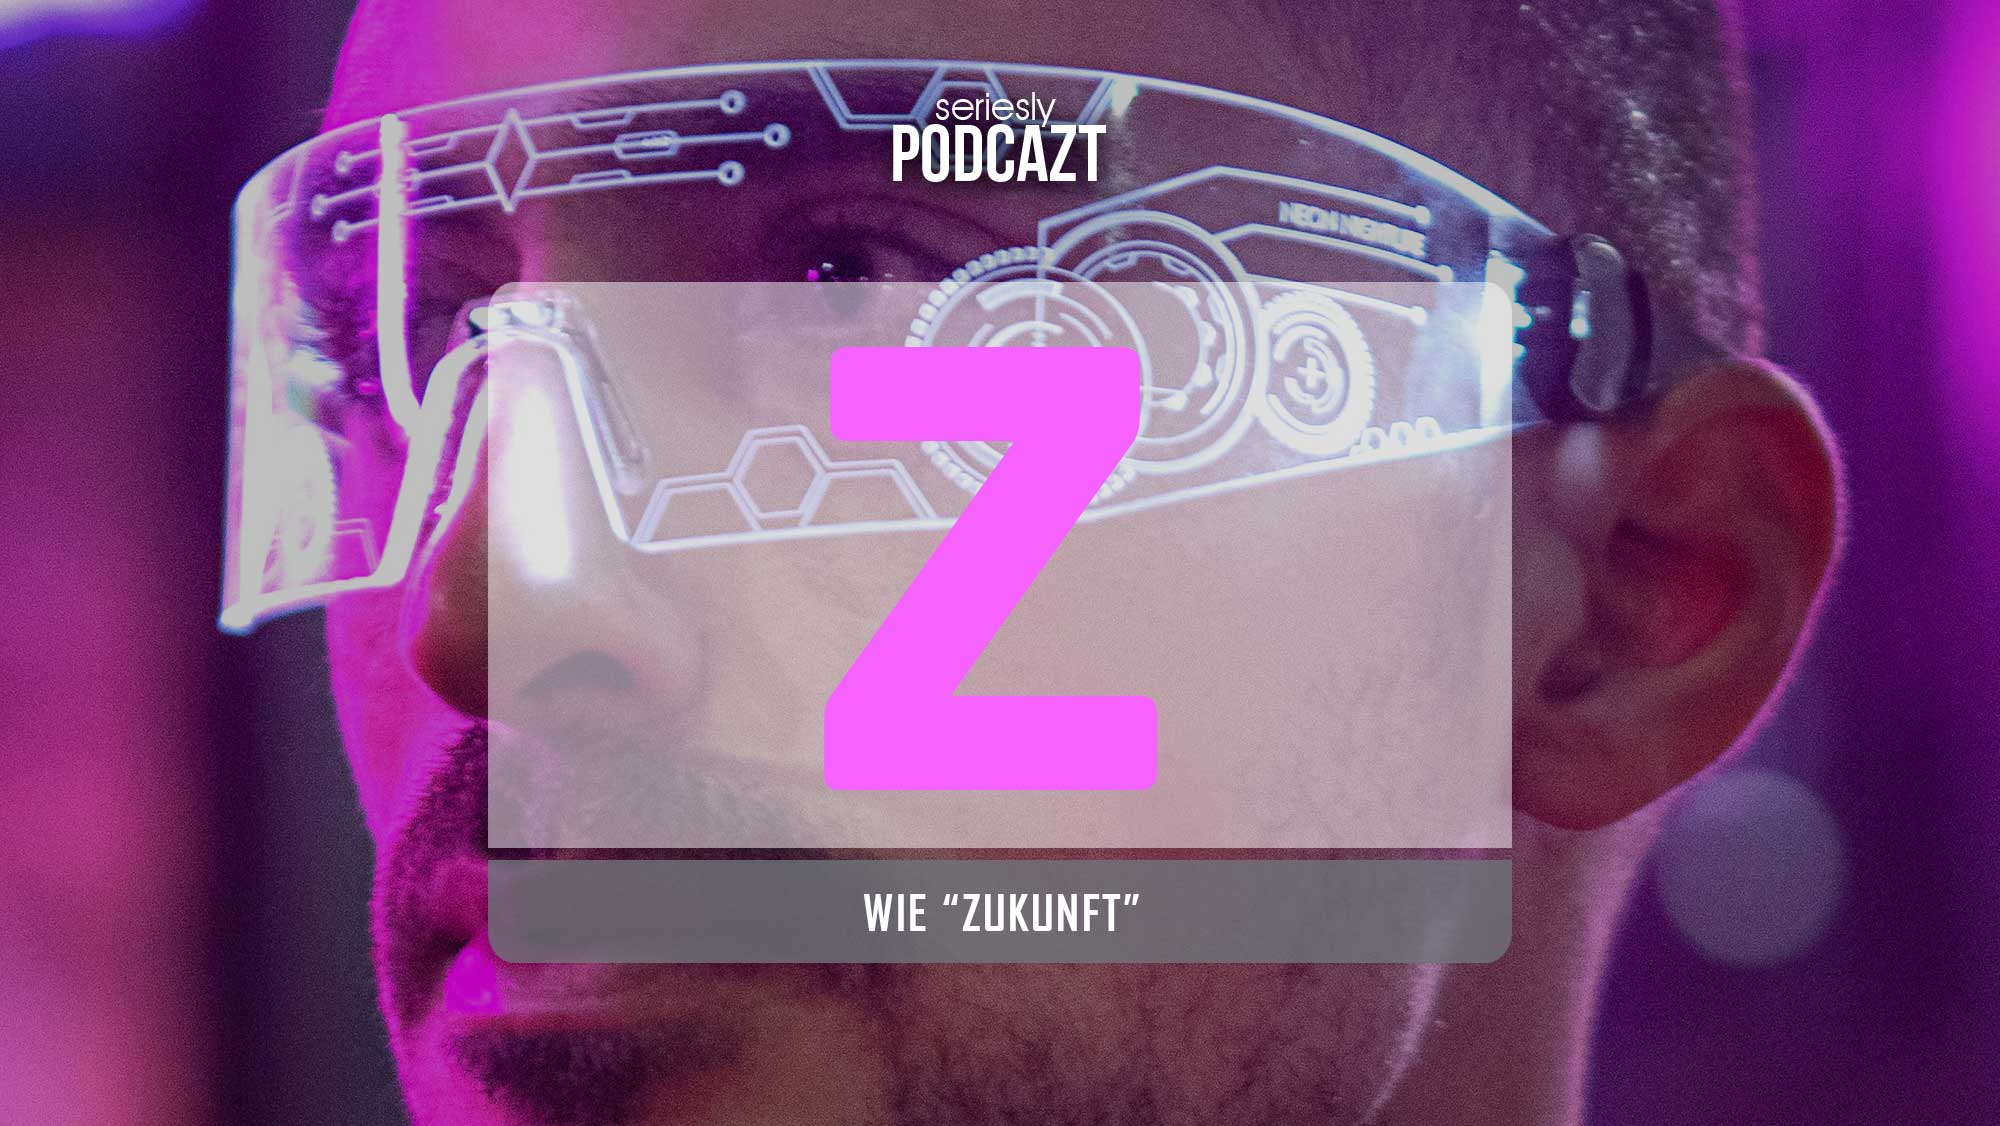 Podcast zur Zukunft des Fernsehens seriesly-podcAZt_Z-Zukunft 